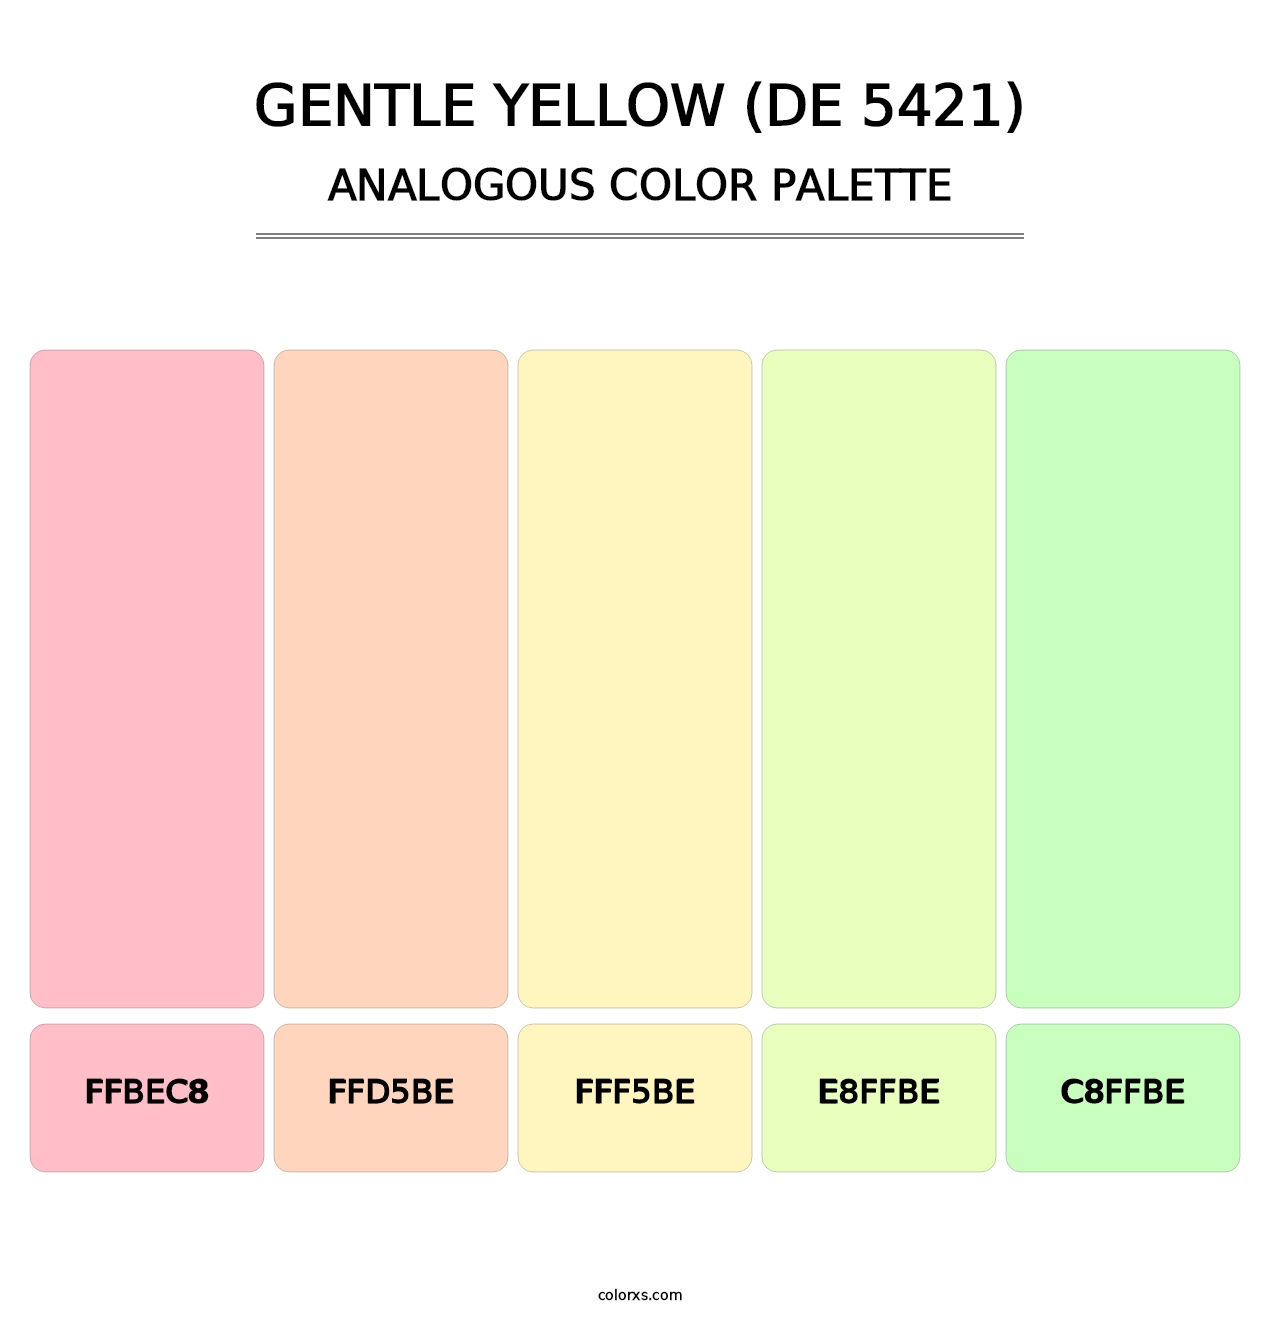 Gentle Yellow (DE 5421) - Analogous Color Palette